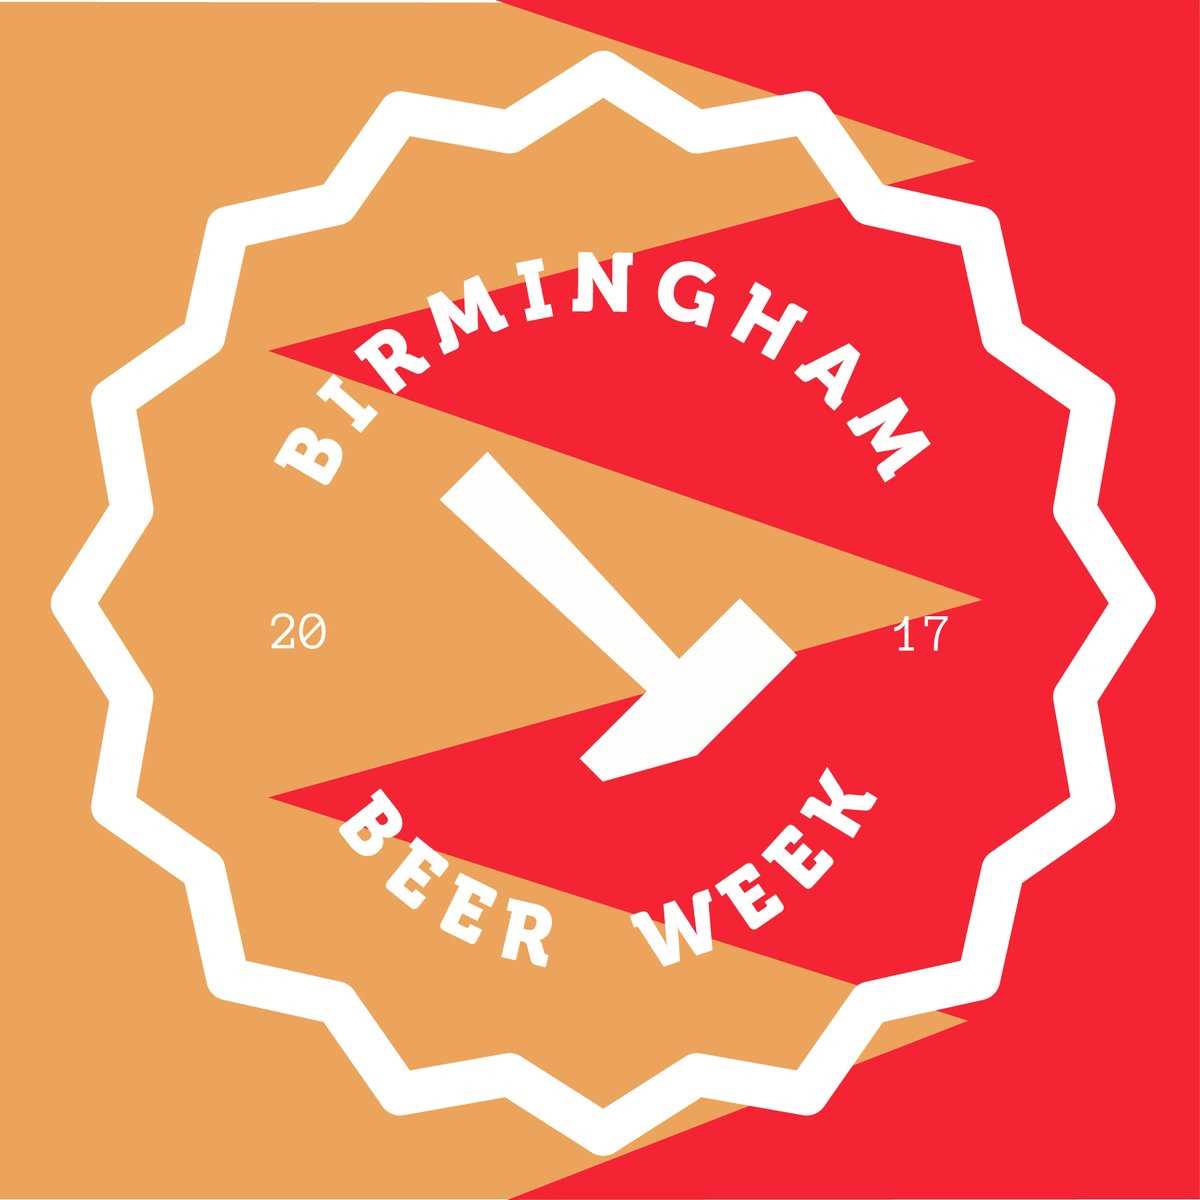 Birmingham loves a great beer!